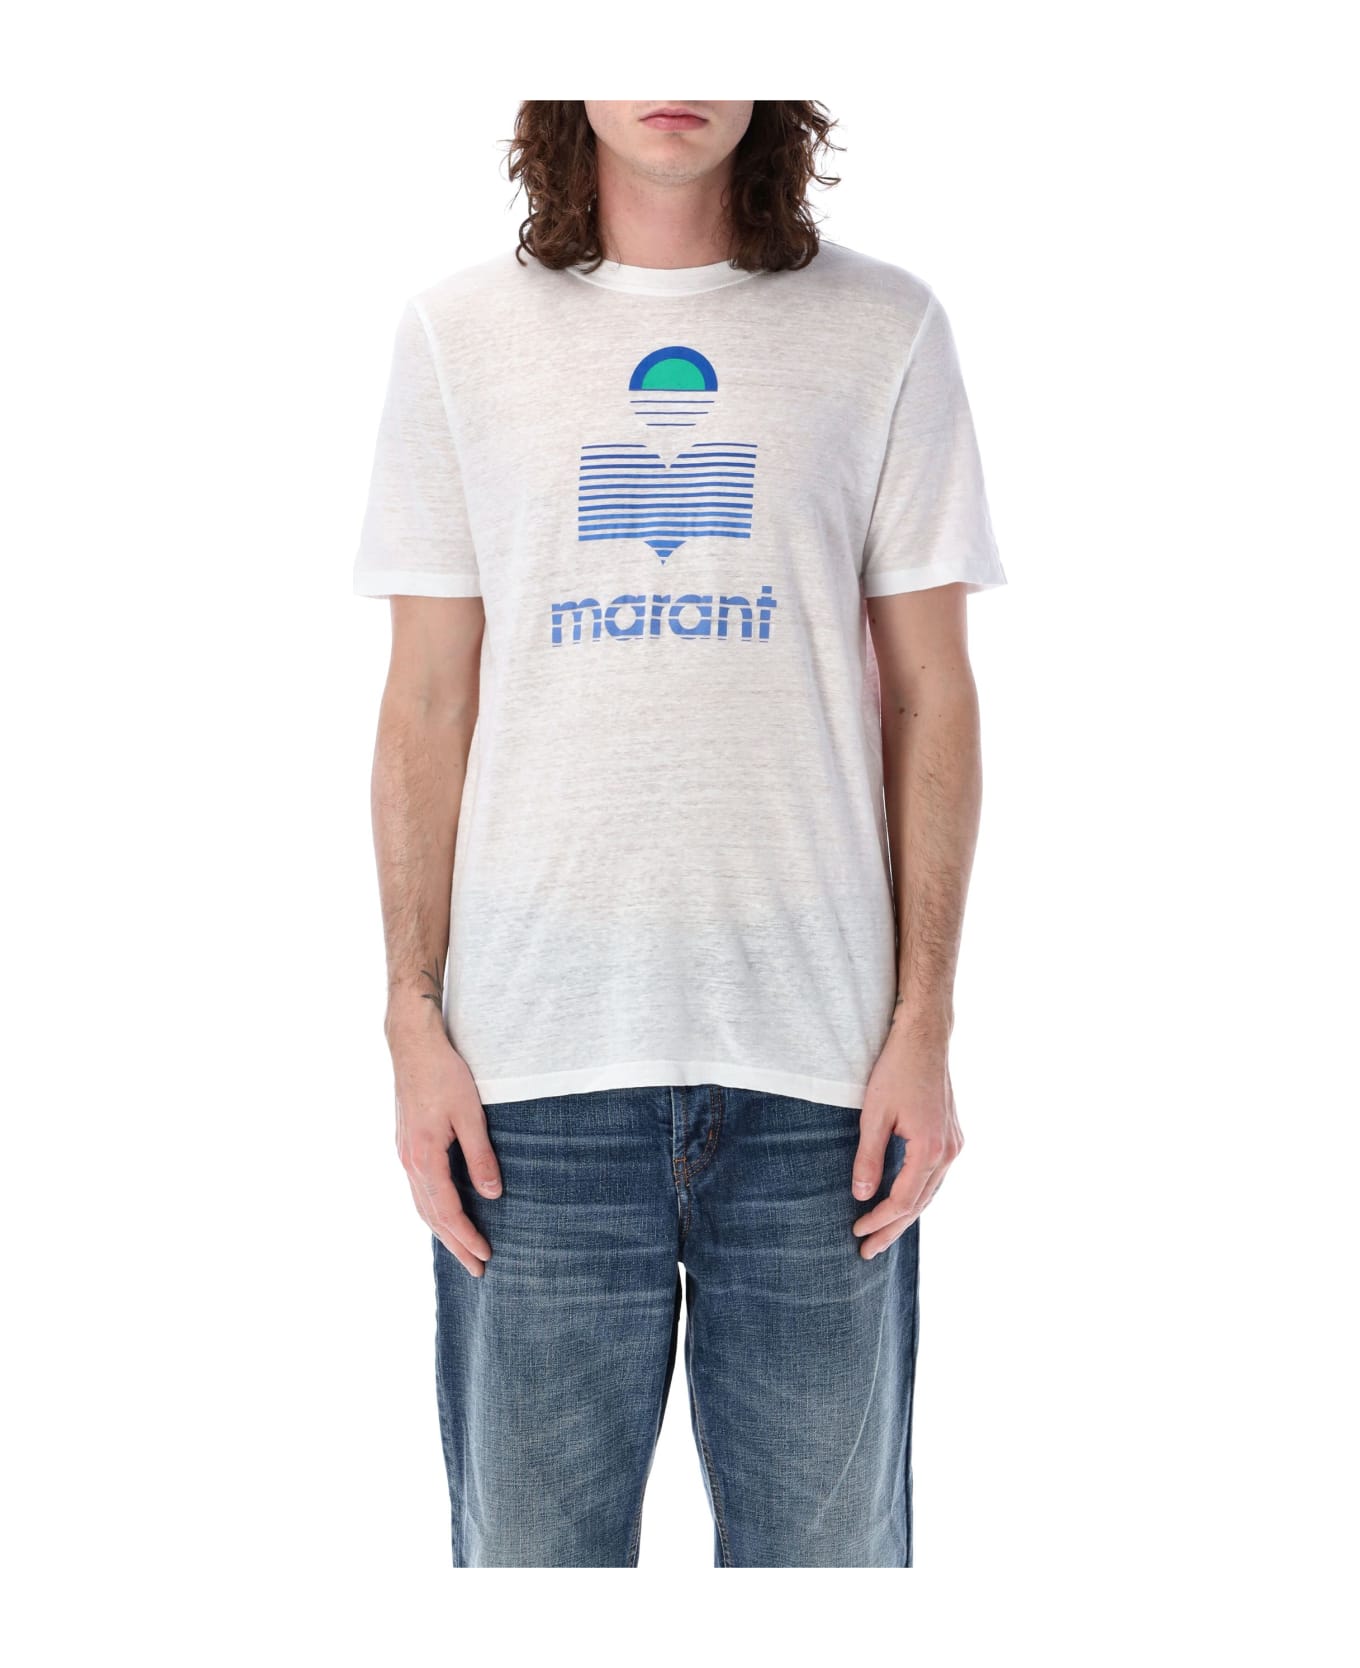 Isabel Marant Karman T-shirt - WHITE